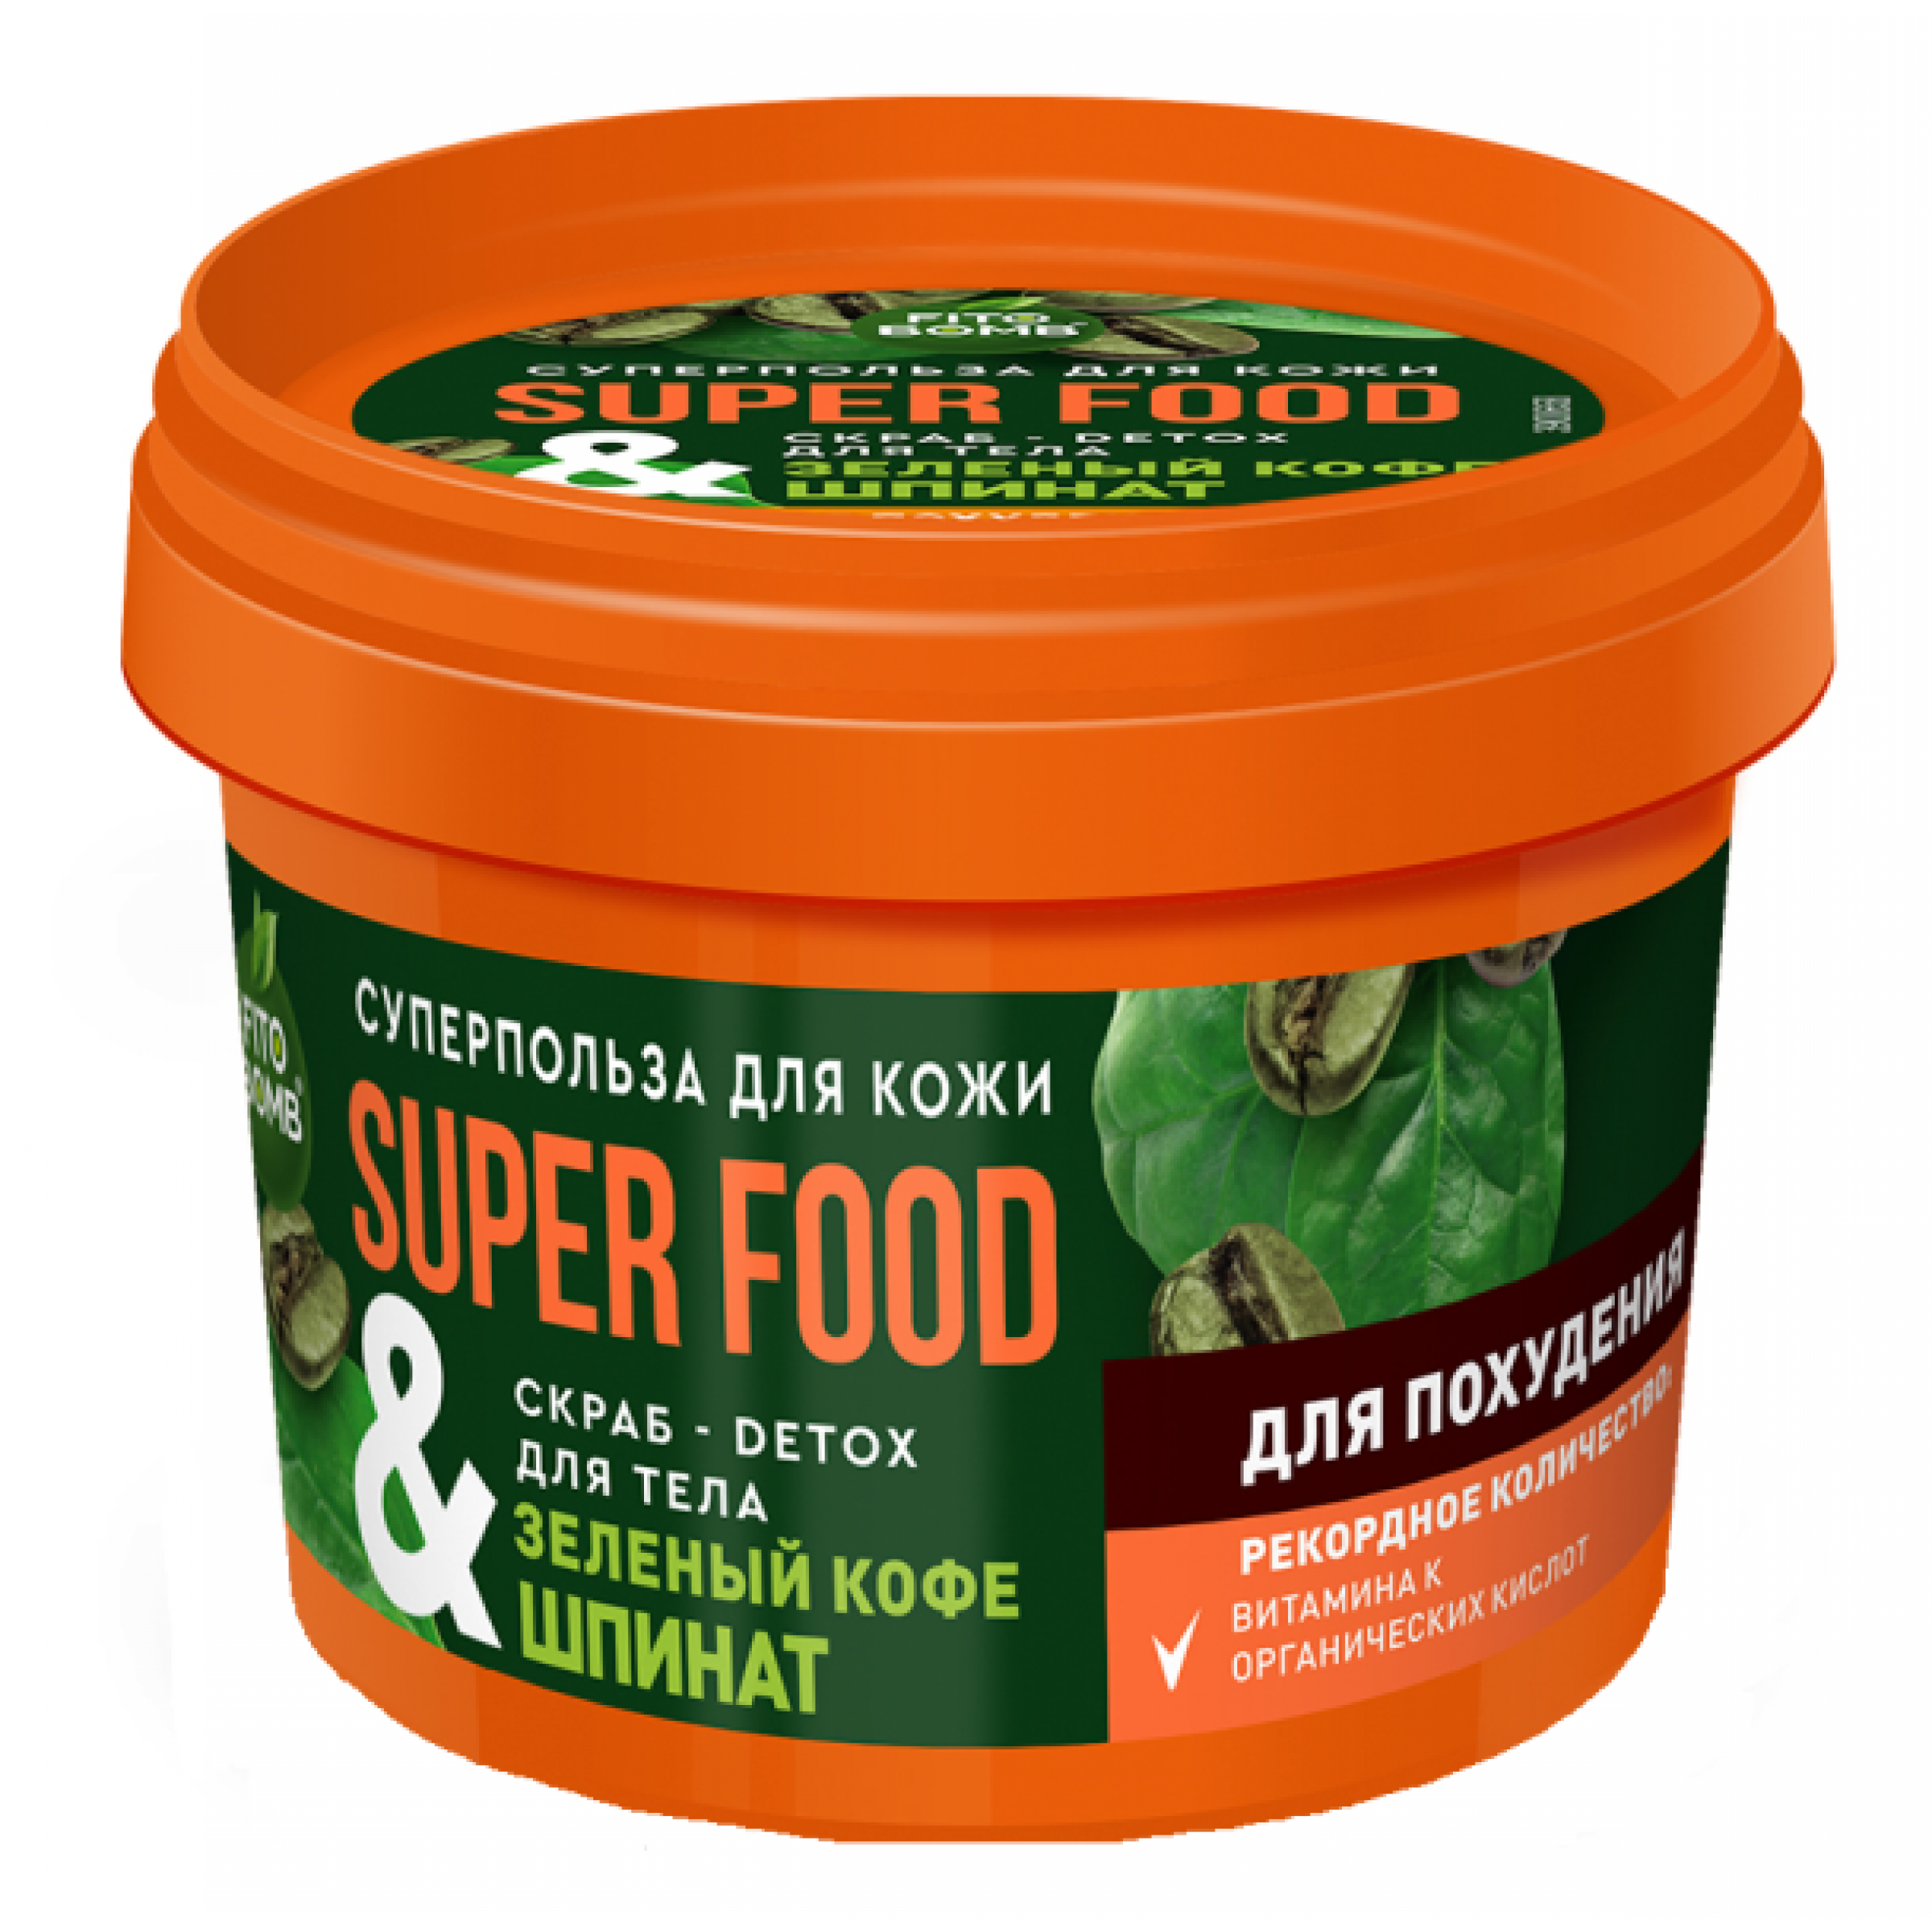 Скраб-детокс для тела Super food Зеленый кофе и Шпинат Фитокосметик, 100 мл